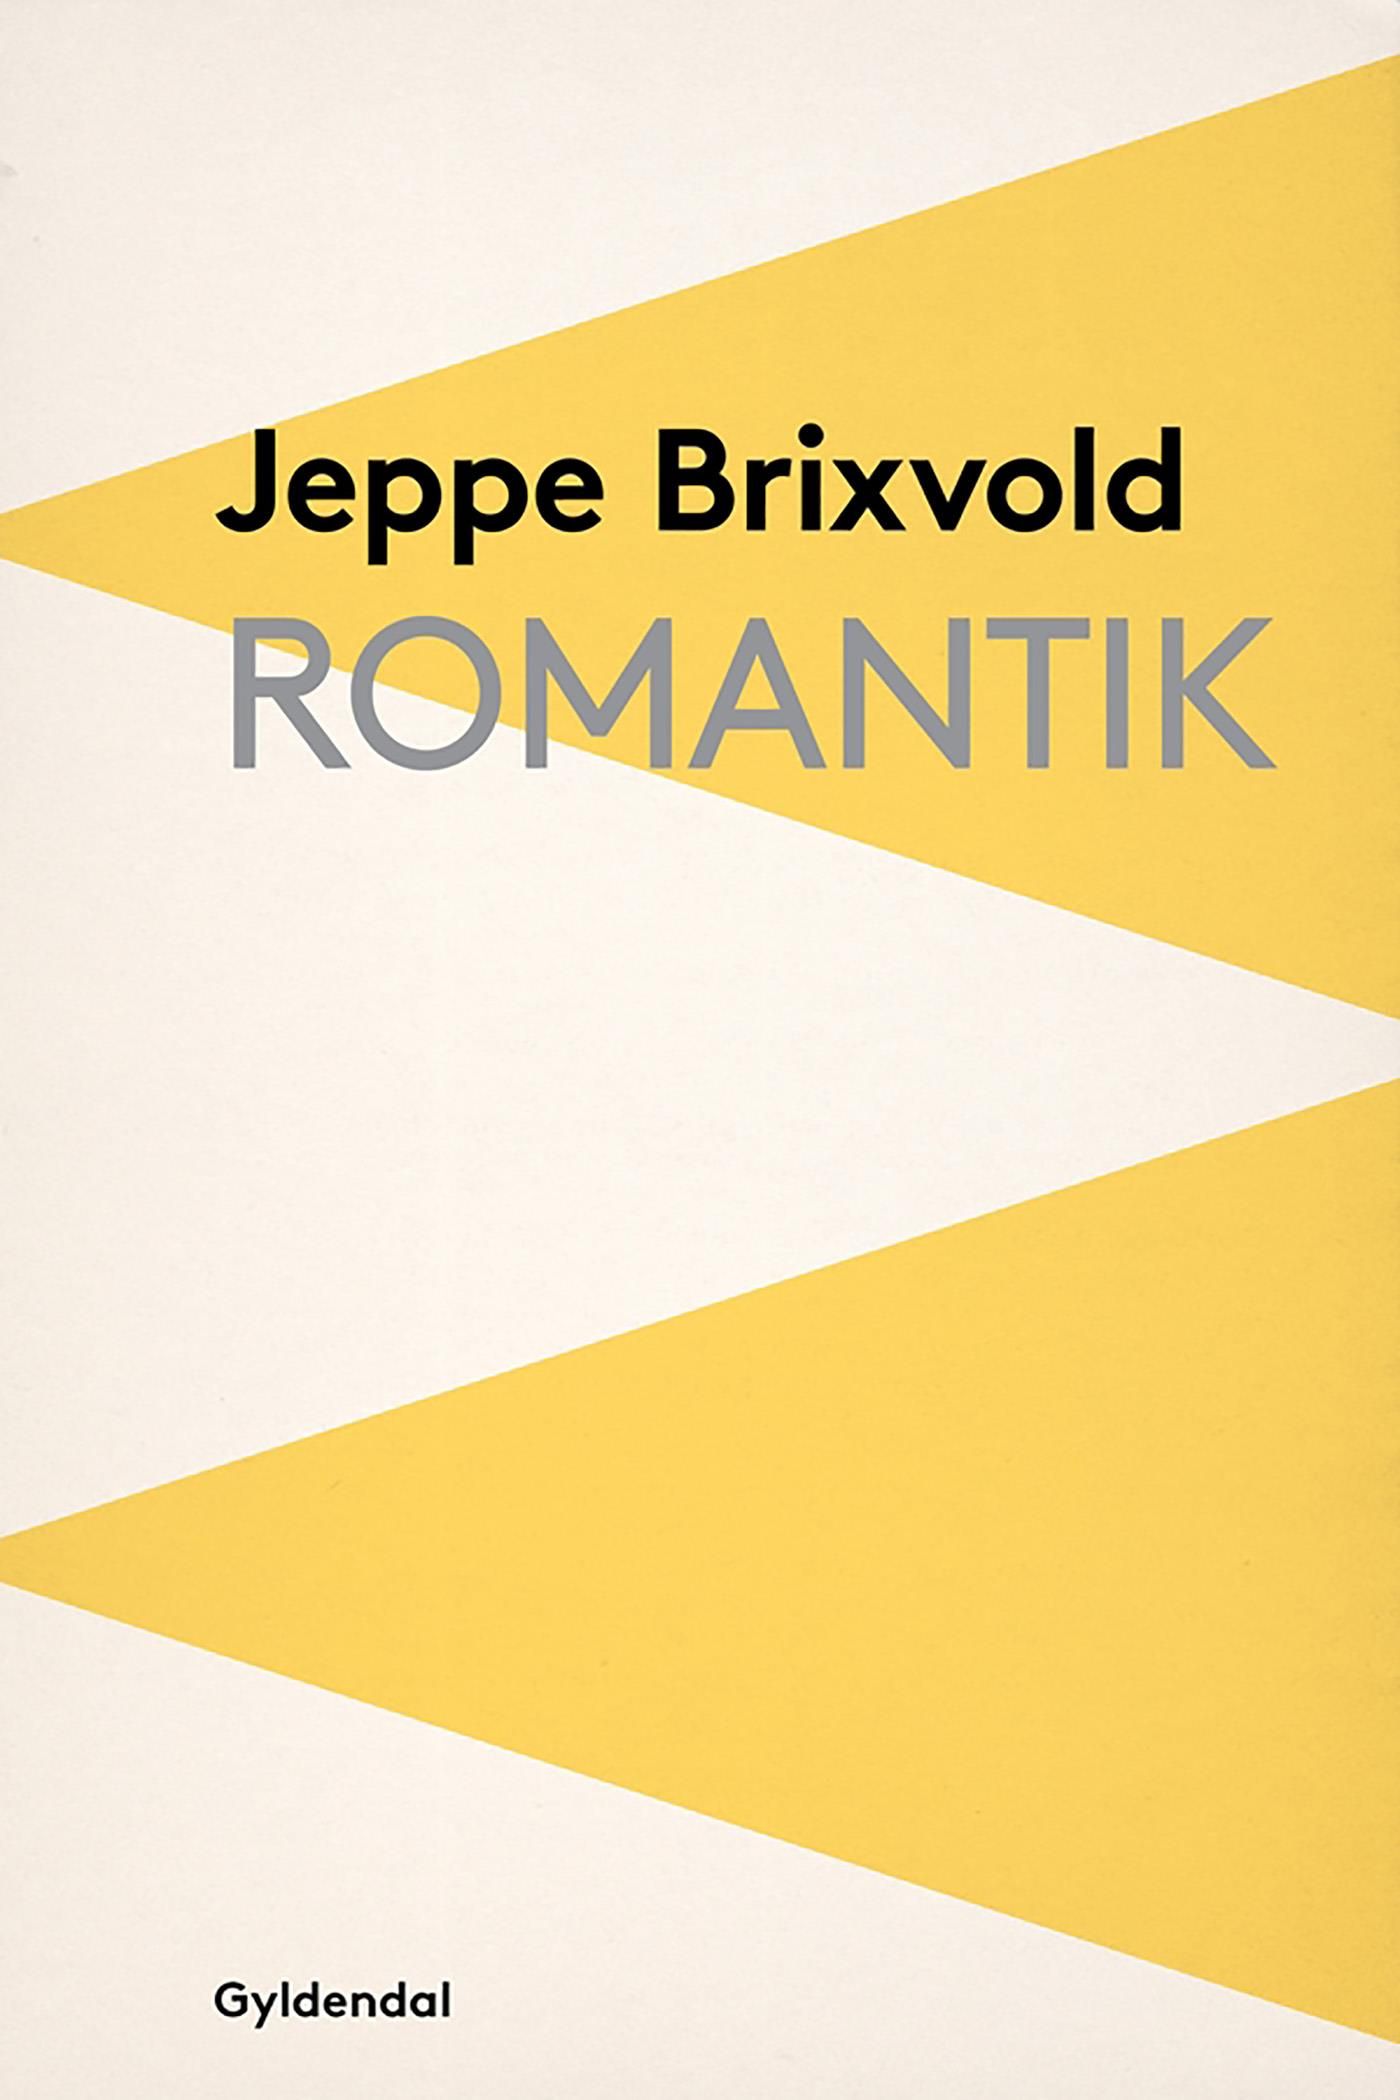 Romantik, e-bog af Jeppe Brixvold